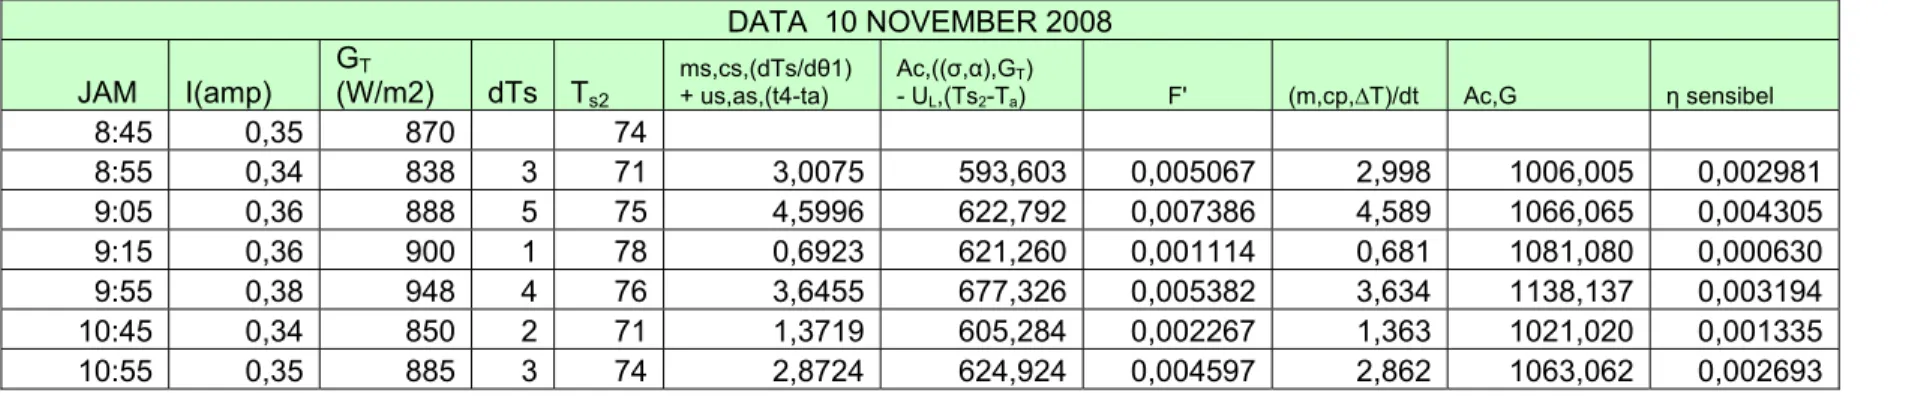 Tabel 4.12. Data kolektor 10 November 2008. 